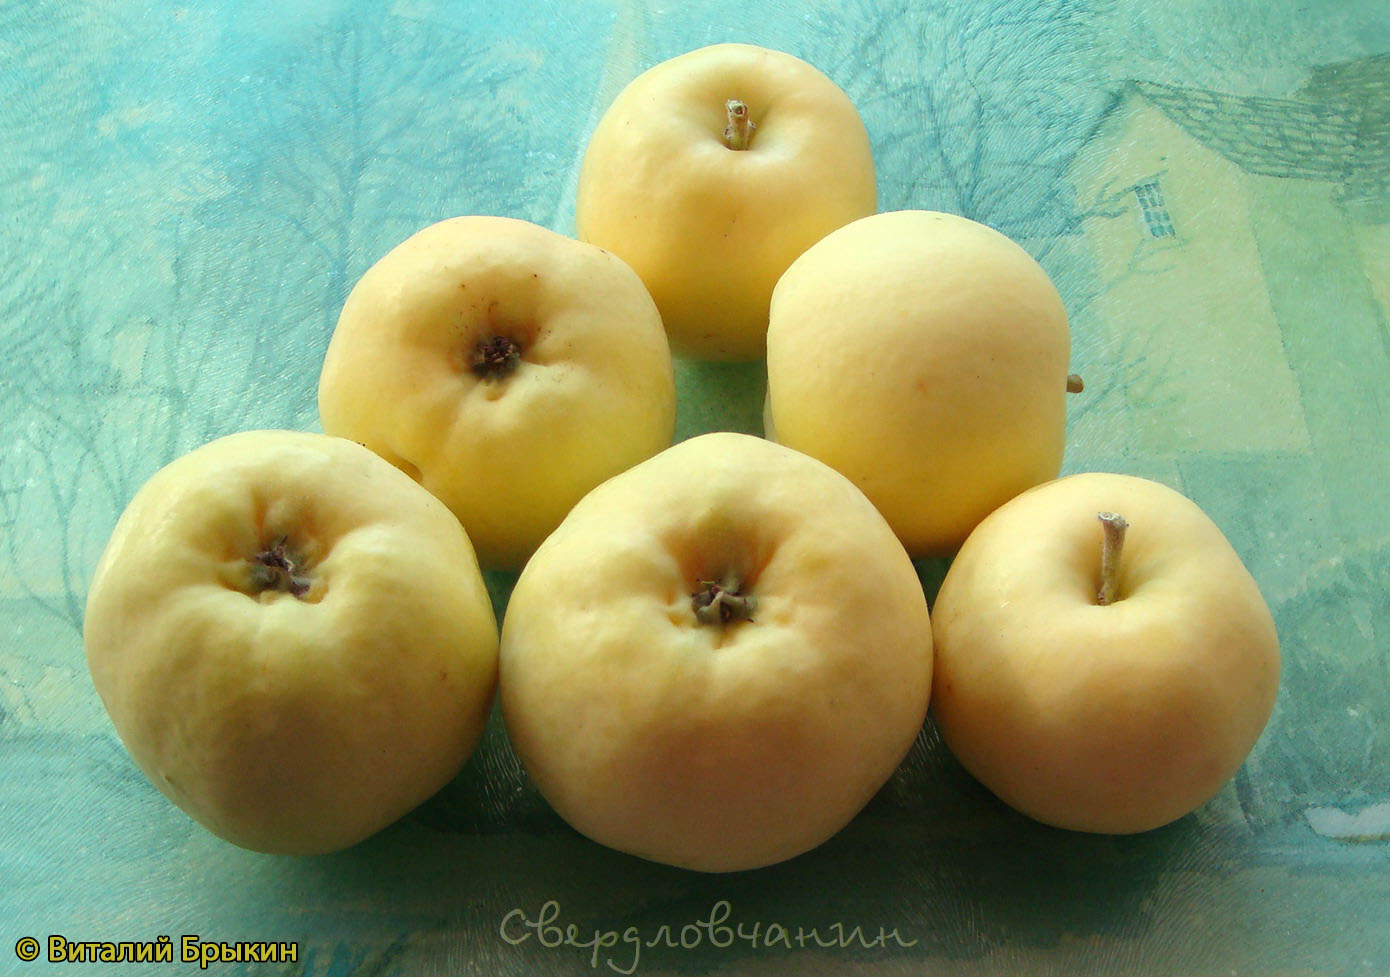 Яблоня Свердловчанин - описание сорта и фото яблок